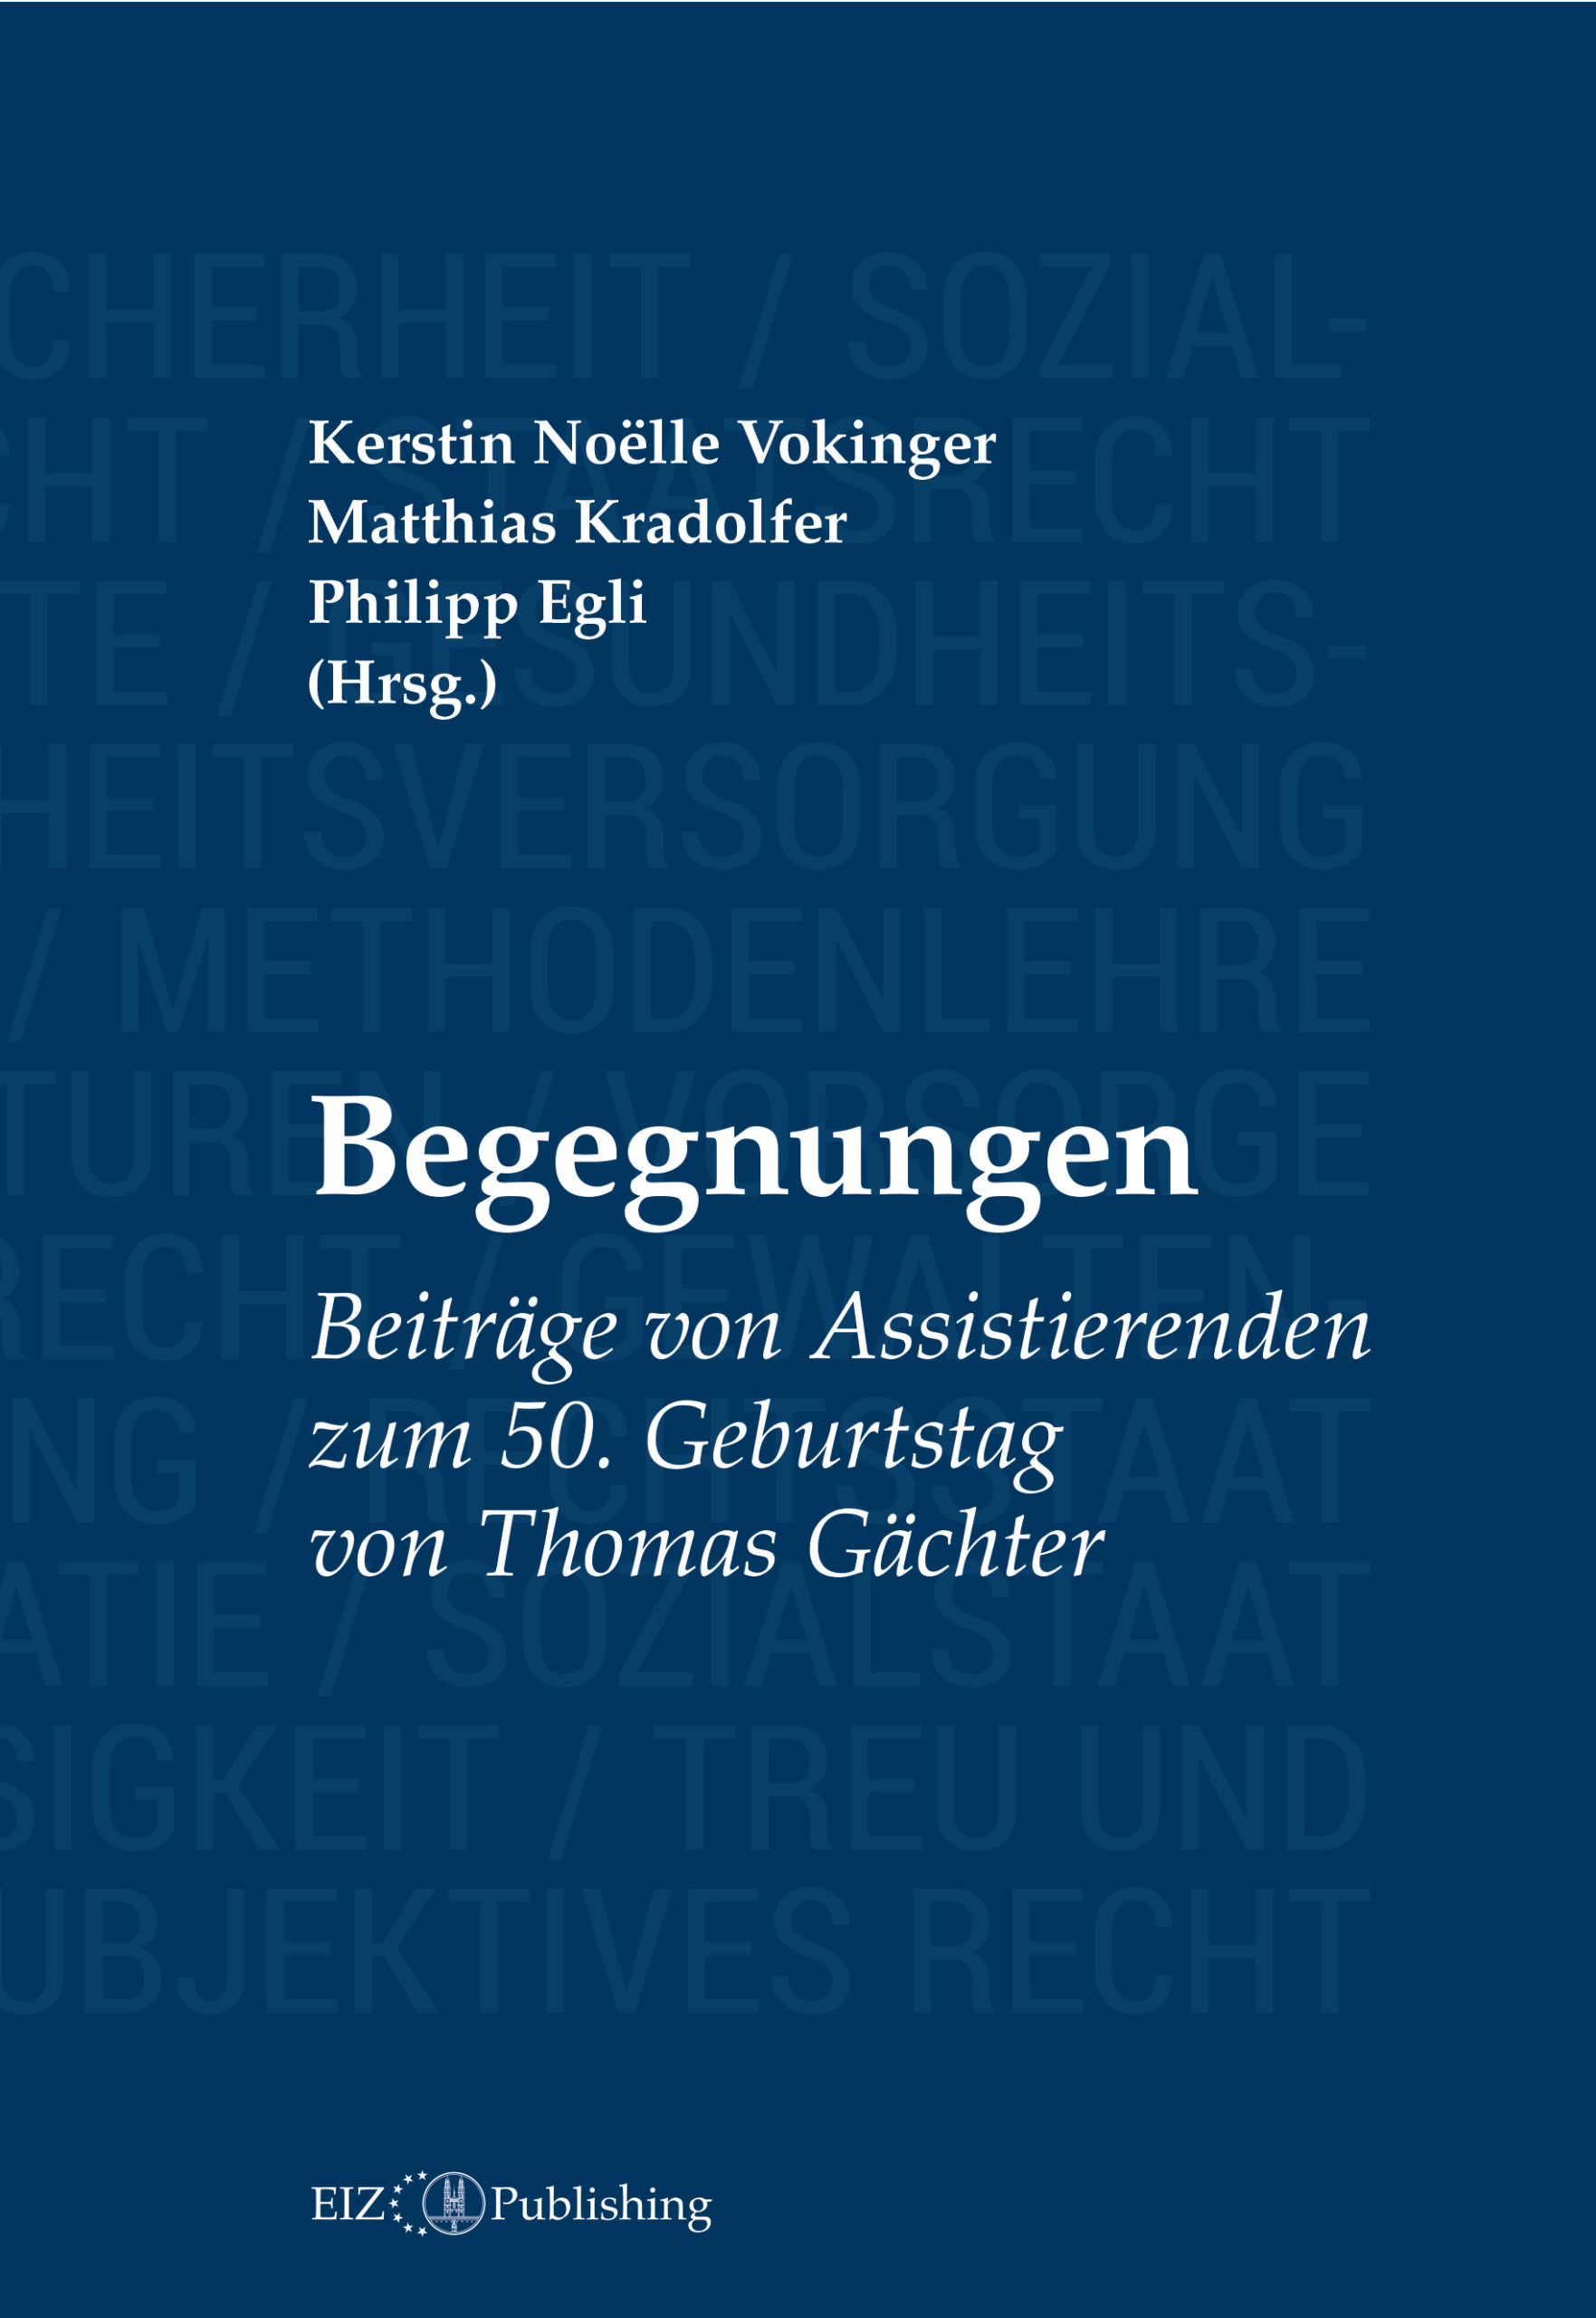 Kerstin Noëlle Vokinger, Matthias Kradolfer, Philipp Egli (Hrsg.), Begegnungen